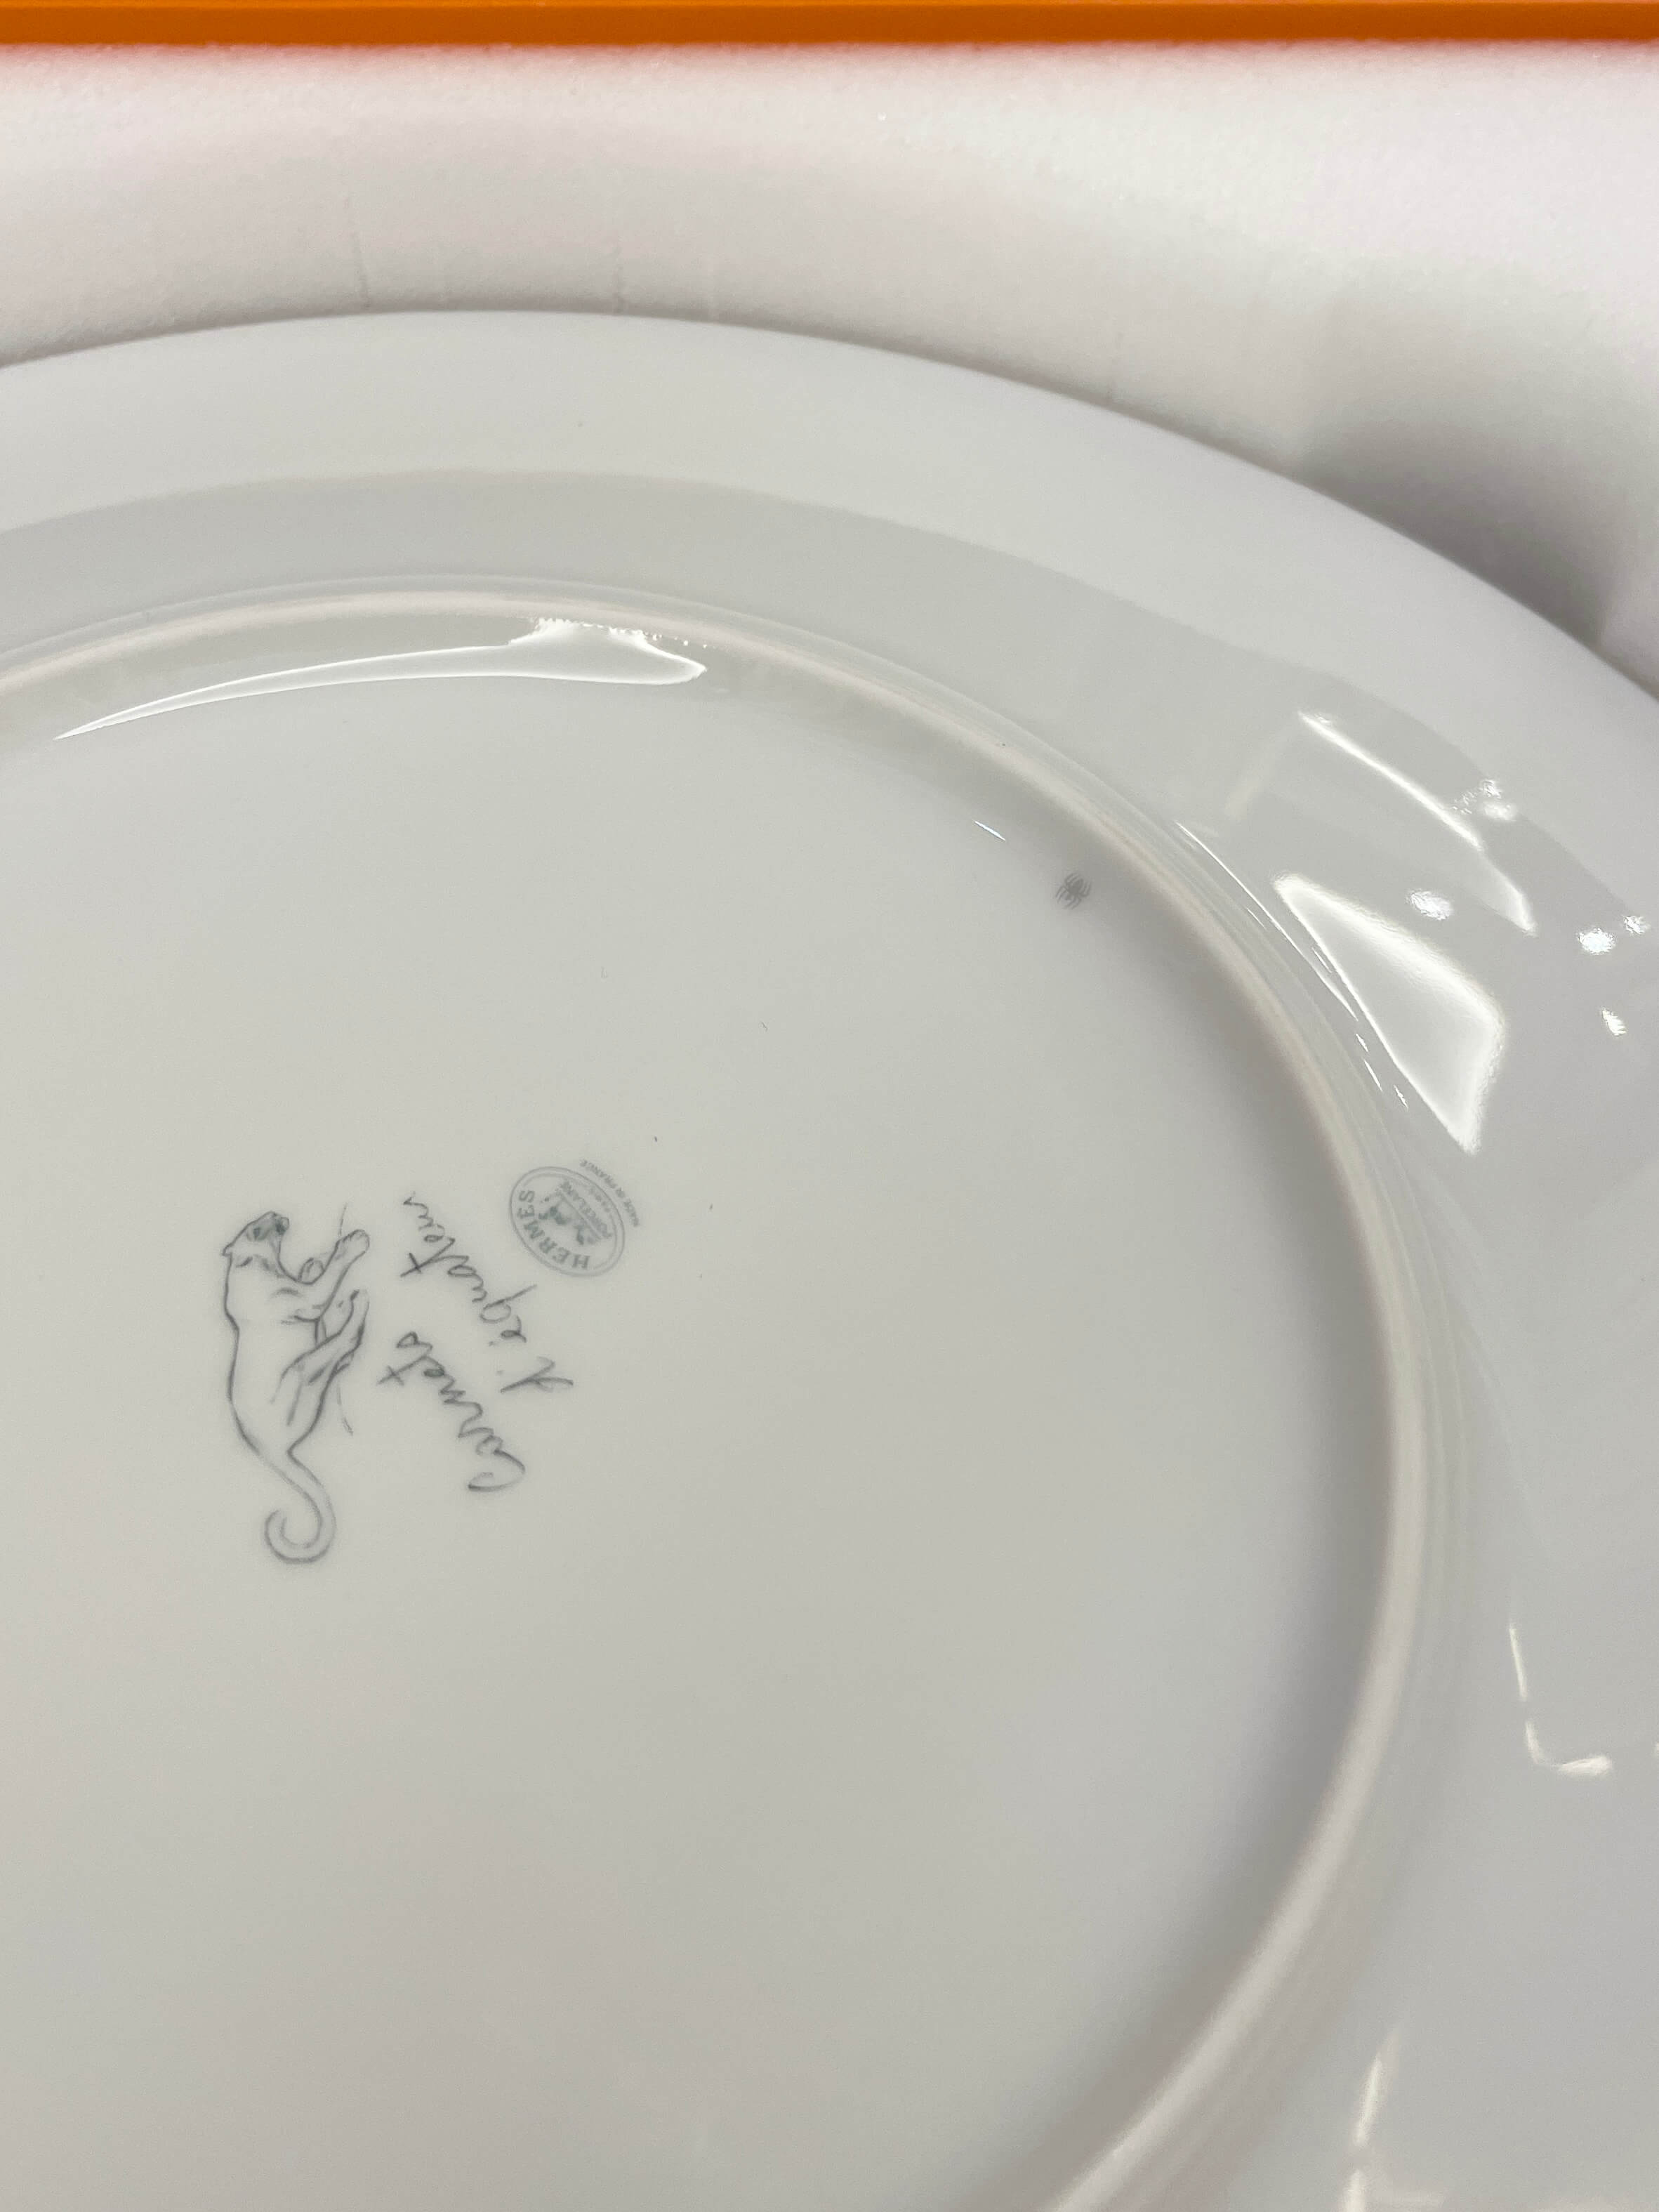 Hermes Jaguar Carnets d'Equateur Dinner Plate / Porcelain